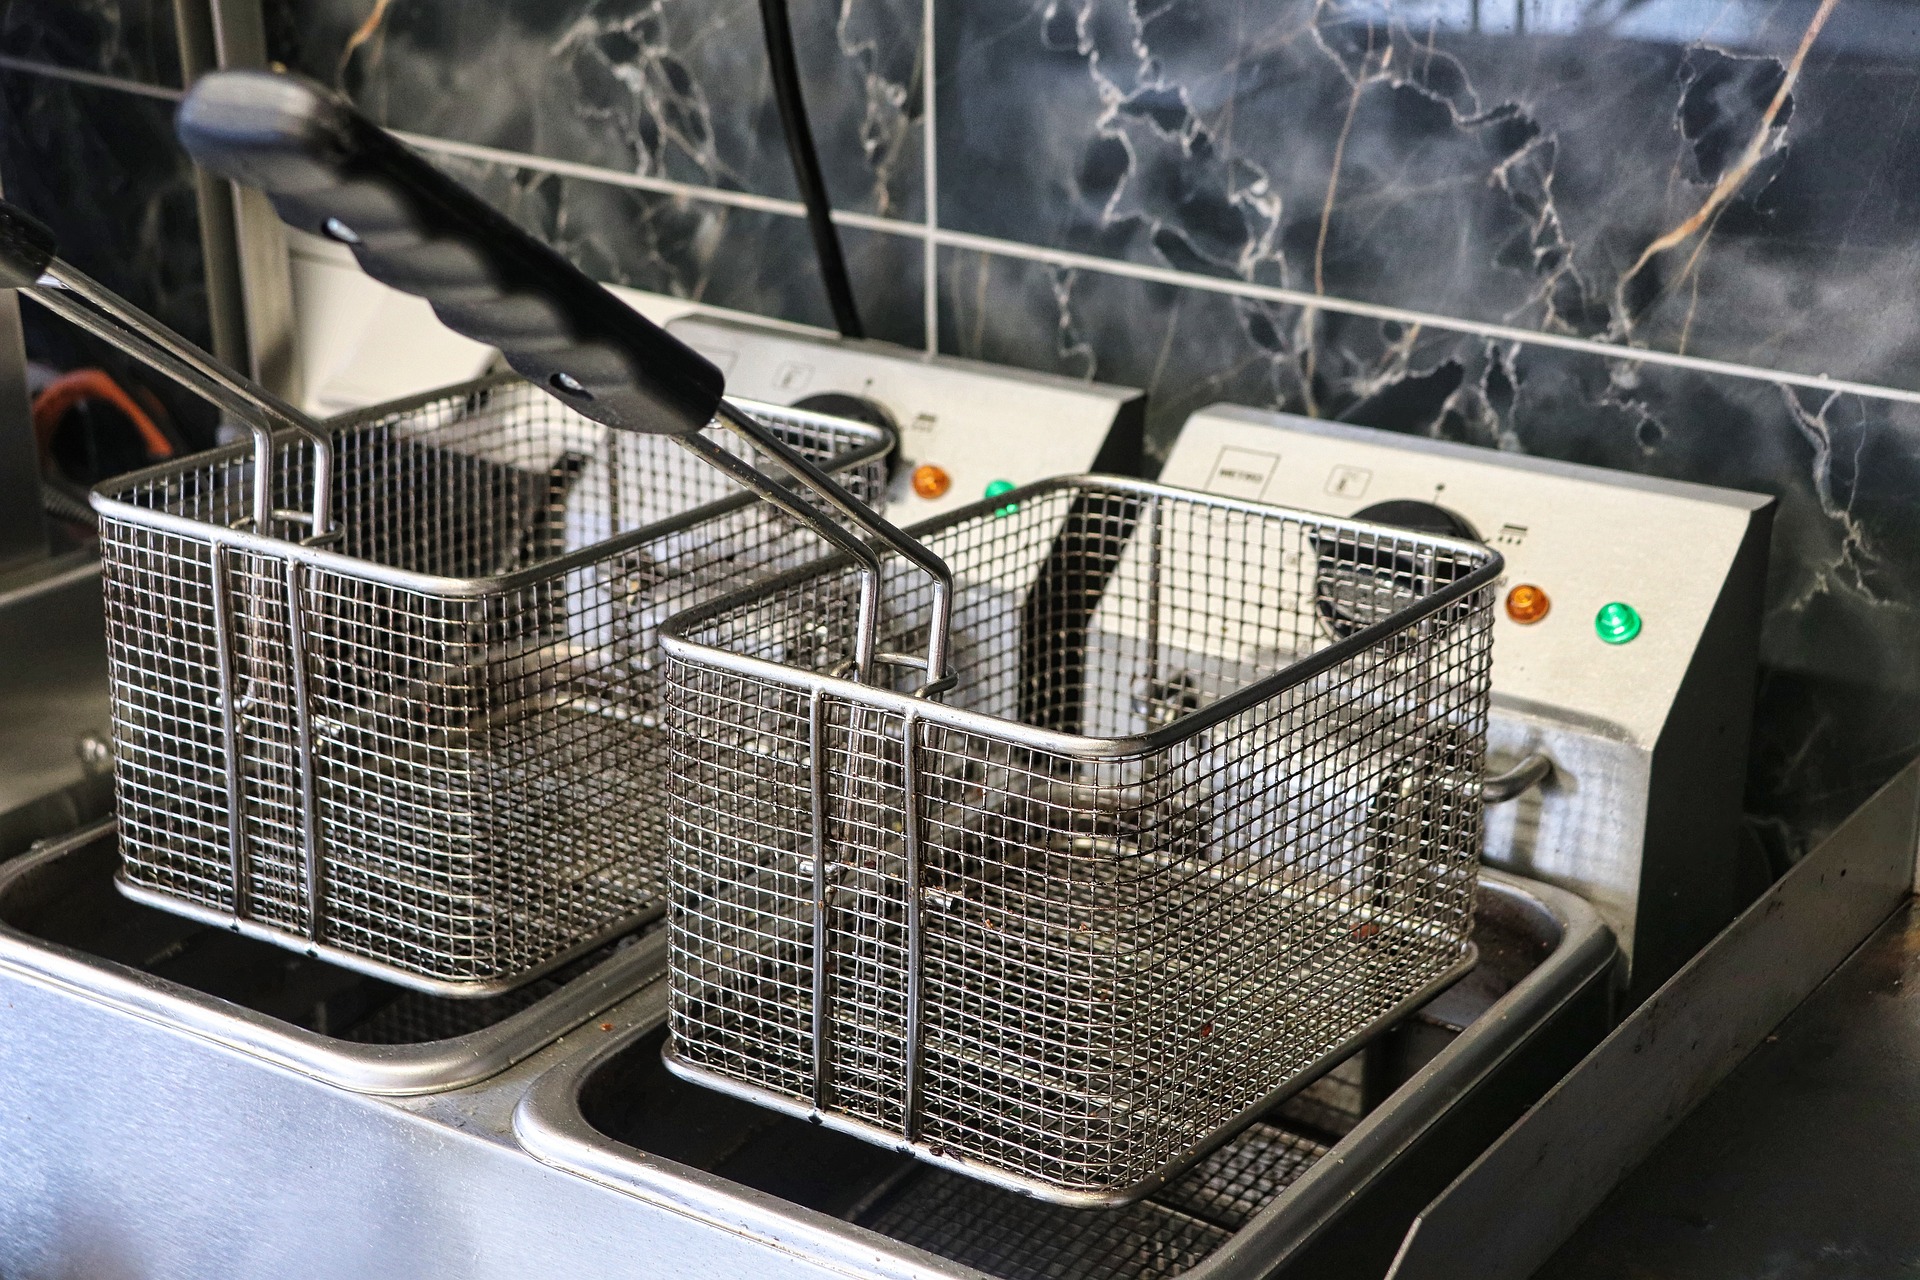 Comment maximiser l'espace de votre cuisine en rangeant votre friteuse de manière efficace ?